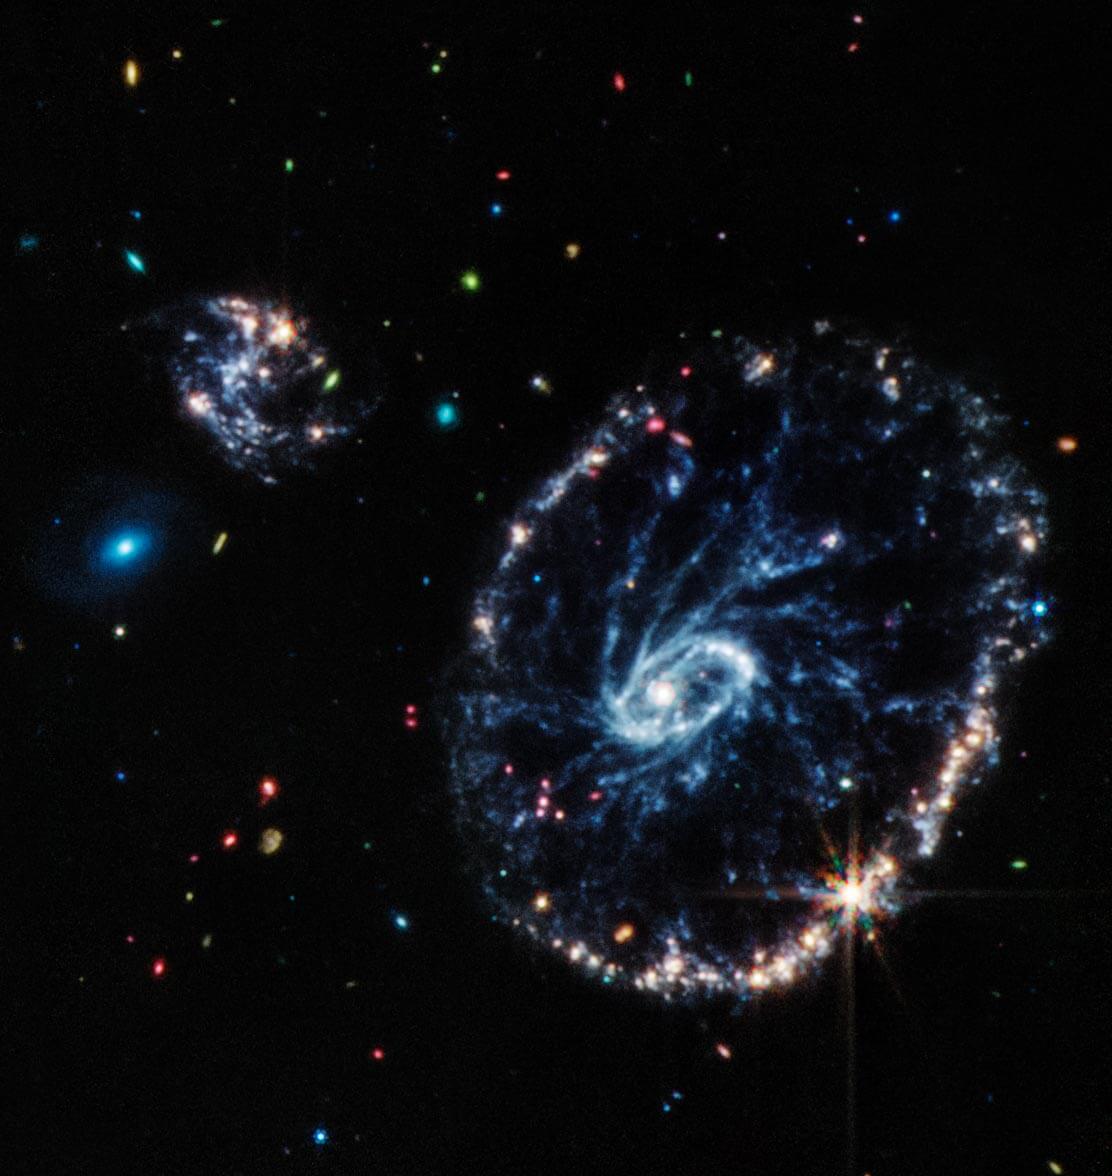 התמונה הזאת של ווב מראה קבוצת גלקסיות, ביניהן גלקסיית הגלגל. אור האינפרה אדום הבינוני מגלה פרטים קטנים על אזורי האבק והכוכבים הצעירים בין הטבעות של הגלקסיה, שעשירים בפחמימנים ותרכובות כימיות אחרות, וגם באבק סיליקט, כמו רוב האבק בכדור הארץ. קרדיט: NASA, ESA, CSA, STScI, Webb ERO Production Team